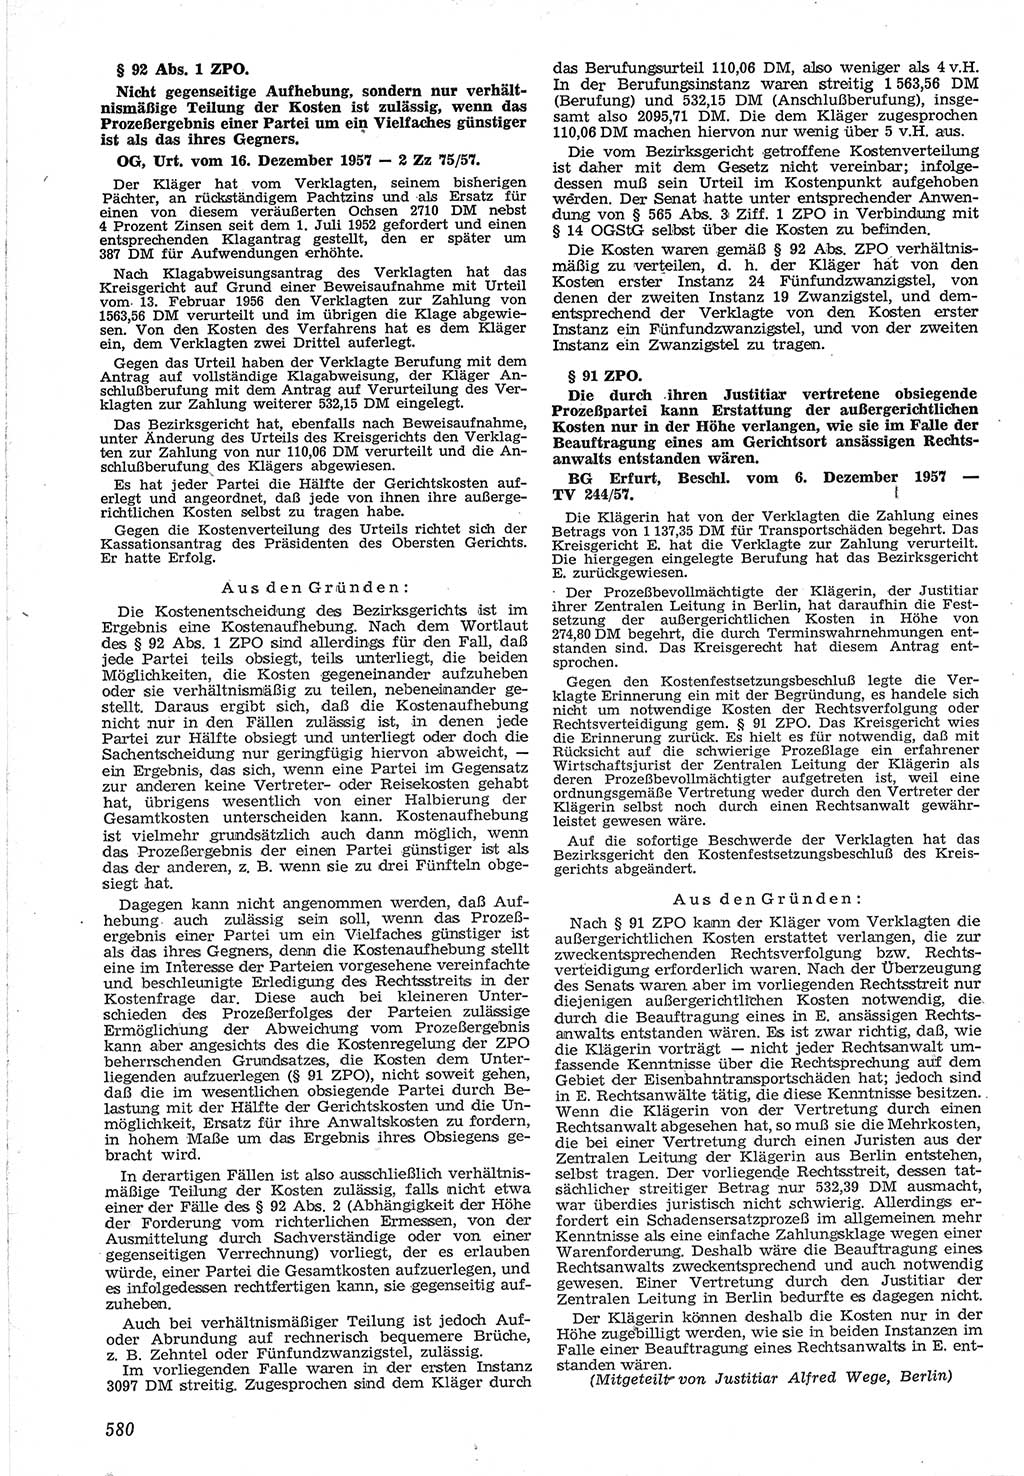 Neue Justiz (NJ), Zeitschrift für Recht und Rechtswissenschaft [Deutsche Demokratische Republik (DDR)], 12. Jahrgang 1958, Seite 580 (NJ DDR 1958, S. 580)